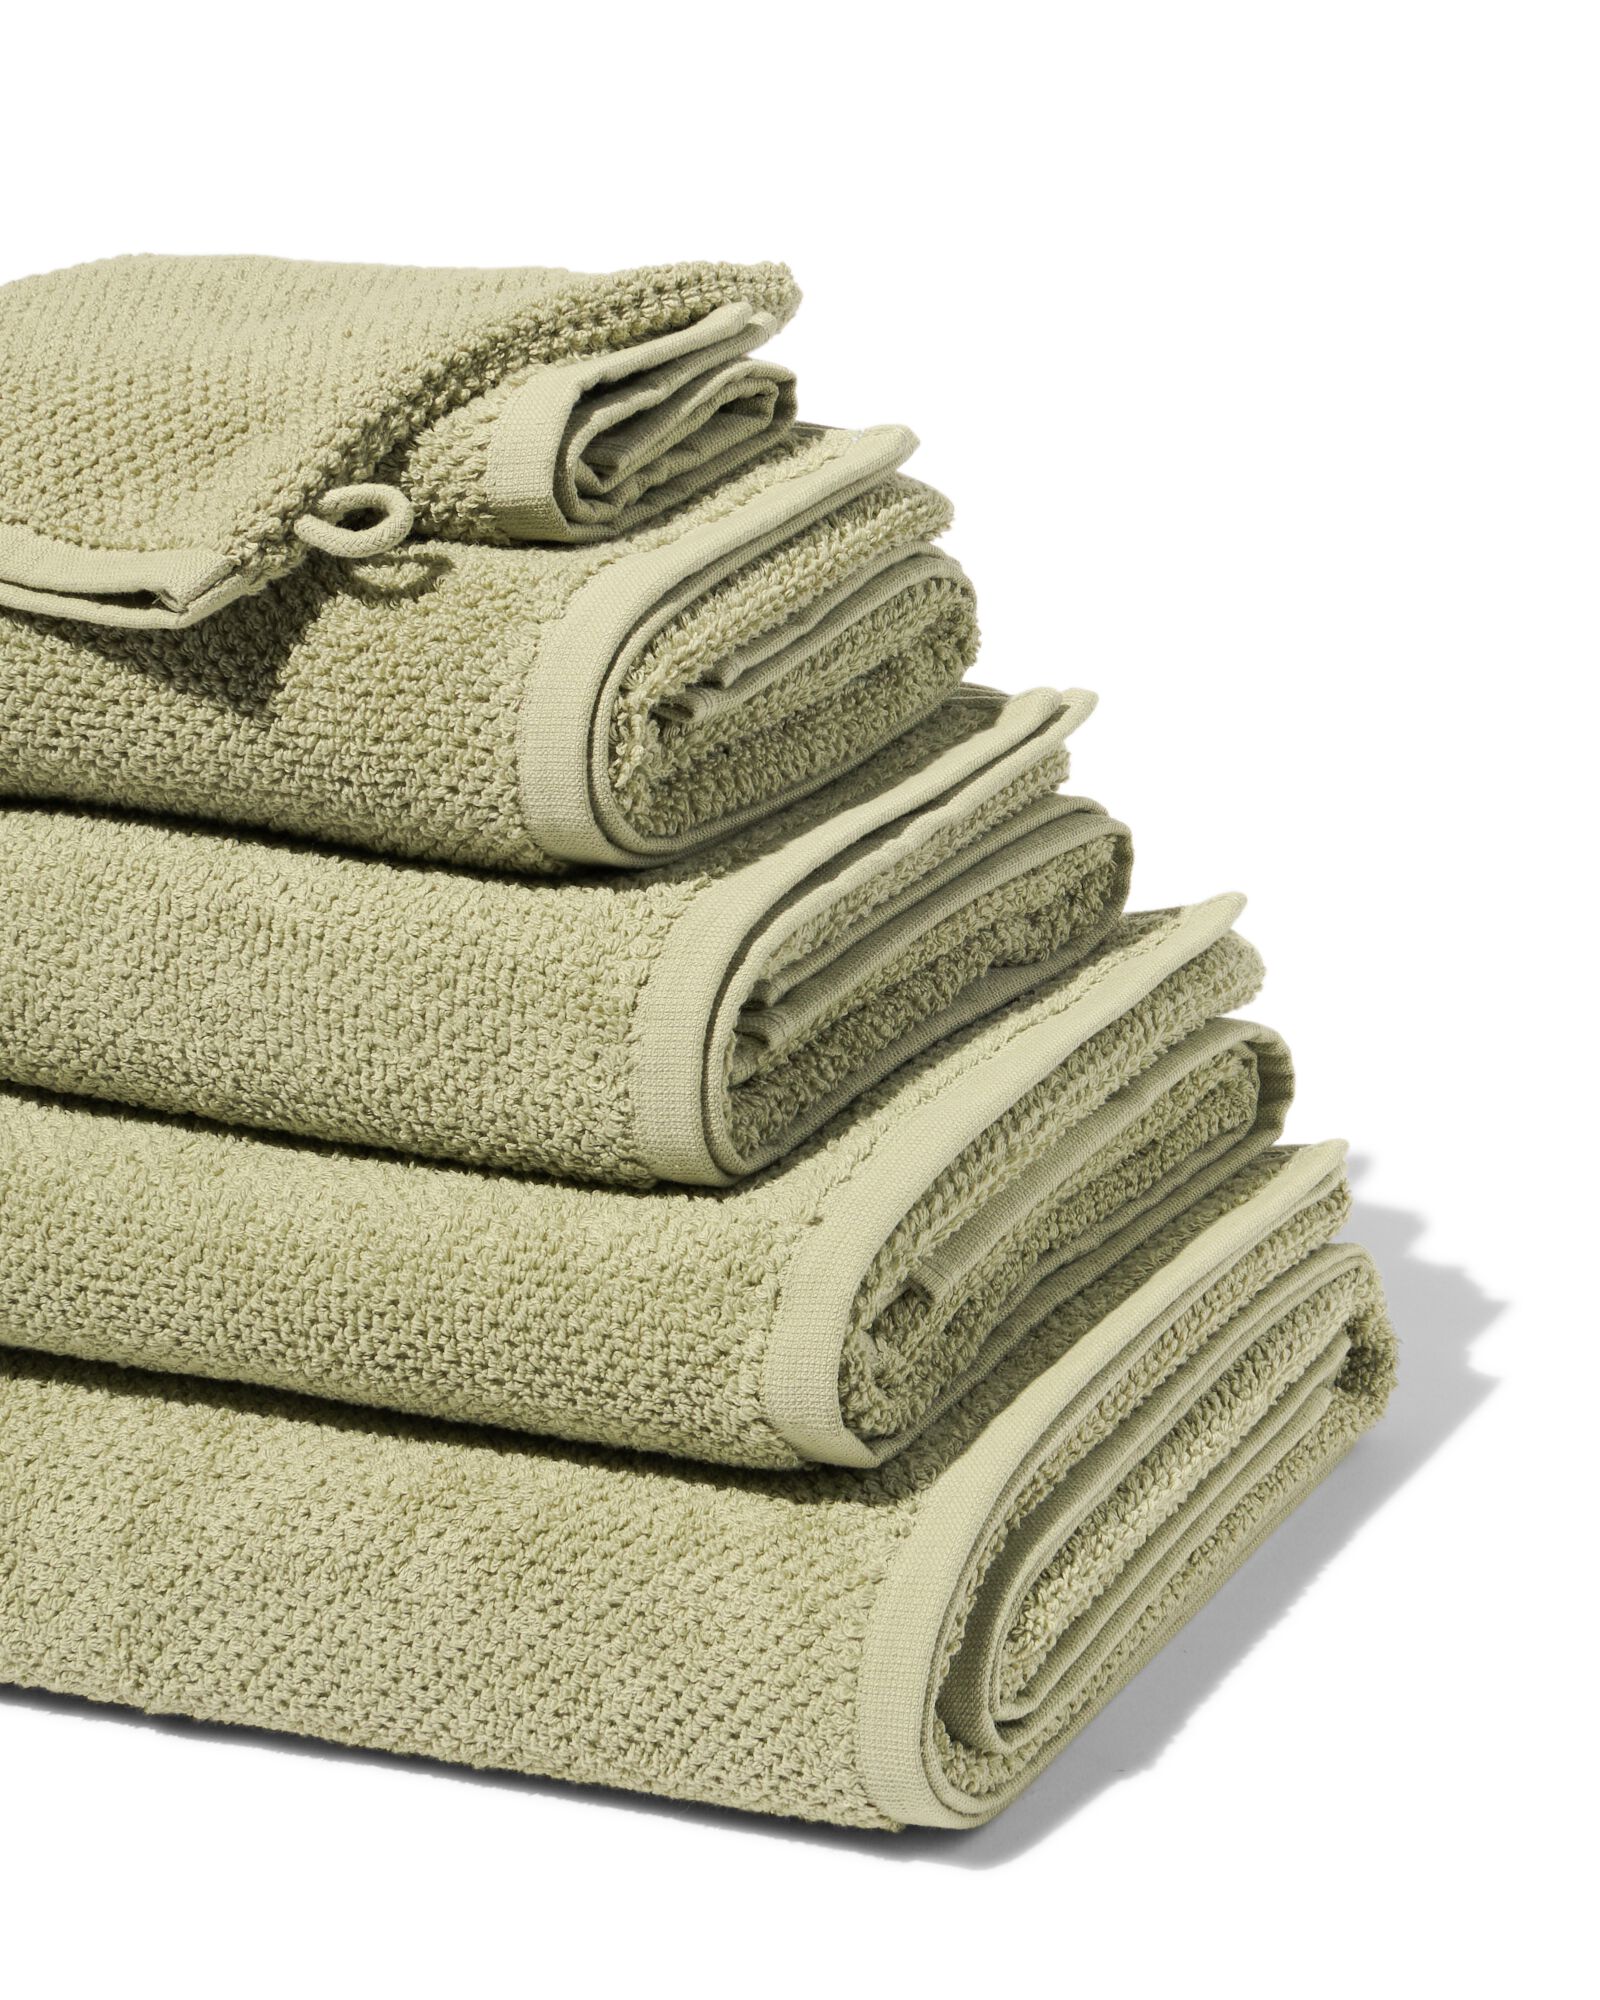 hema serviette de bain 2ème vie coton recyclé vert clair (vert clair)